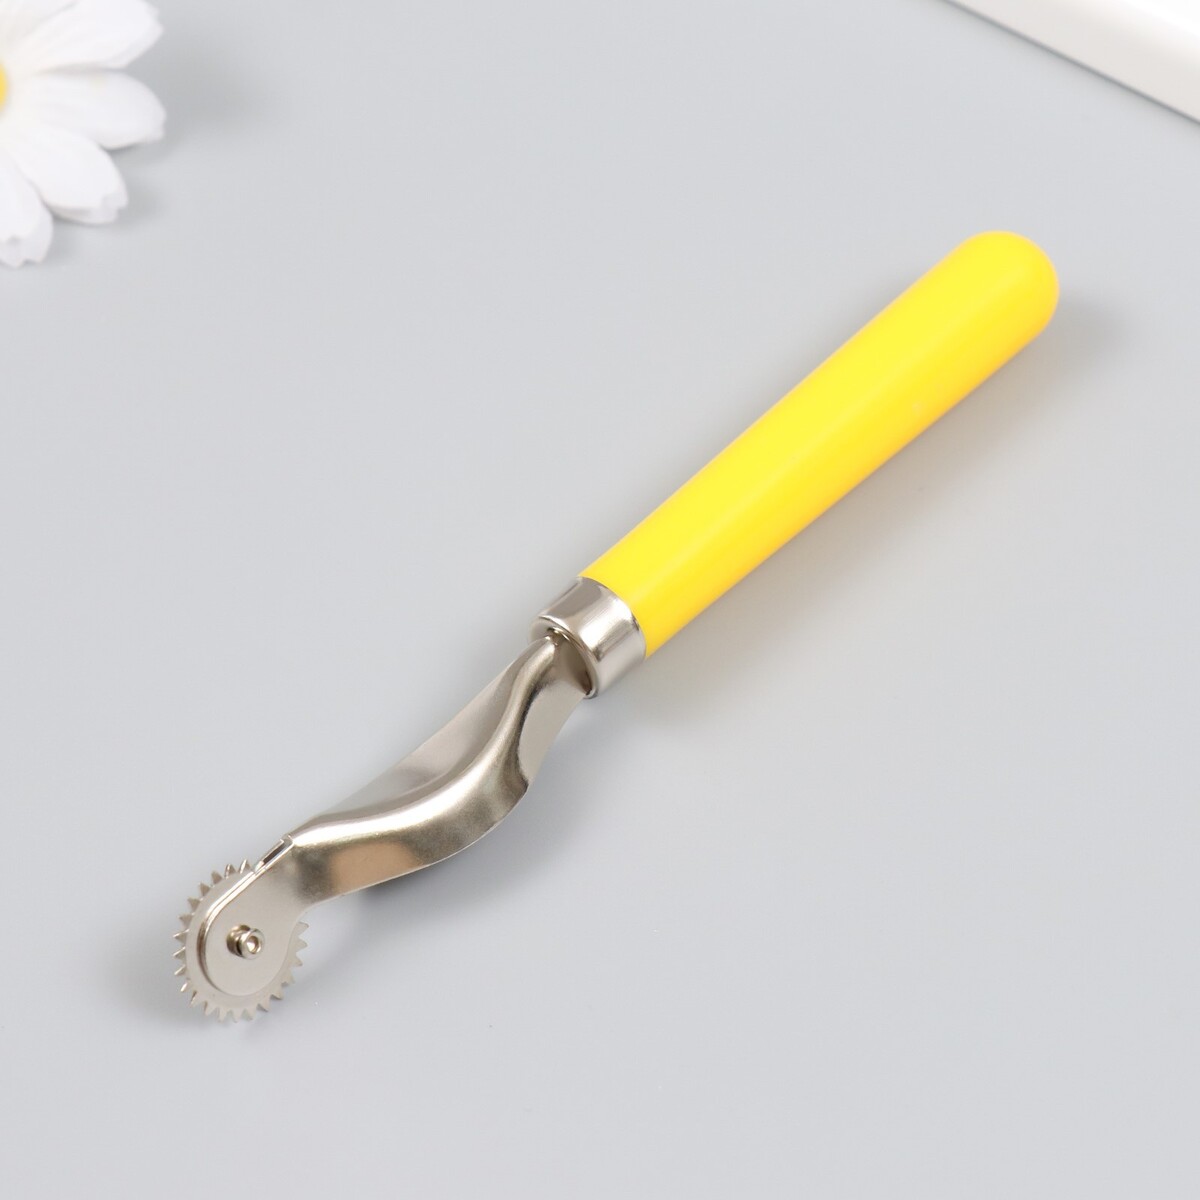 Шовный маркер пластик, металл, желтая ручка 15,5 см